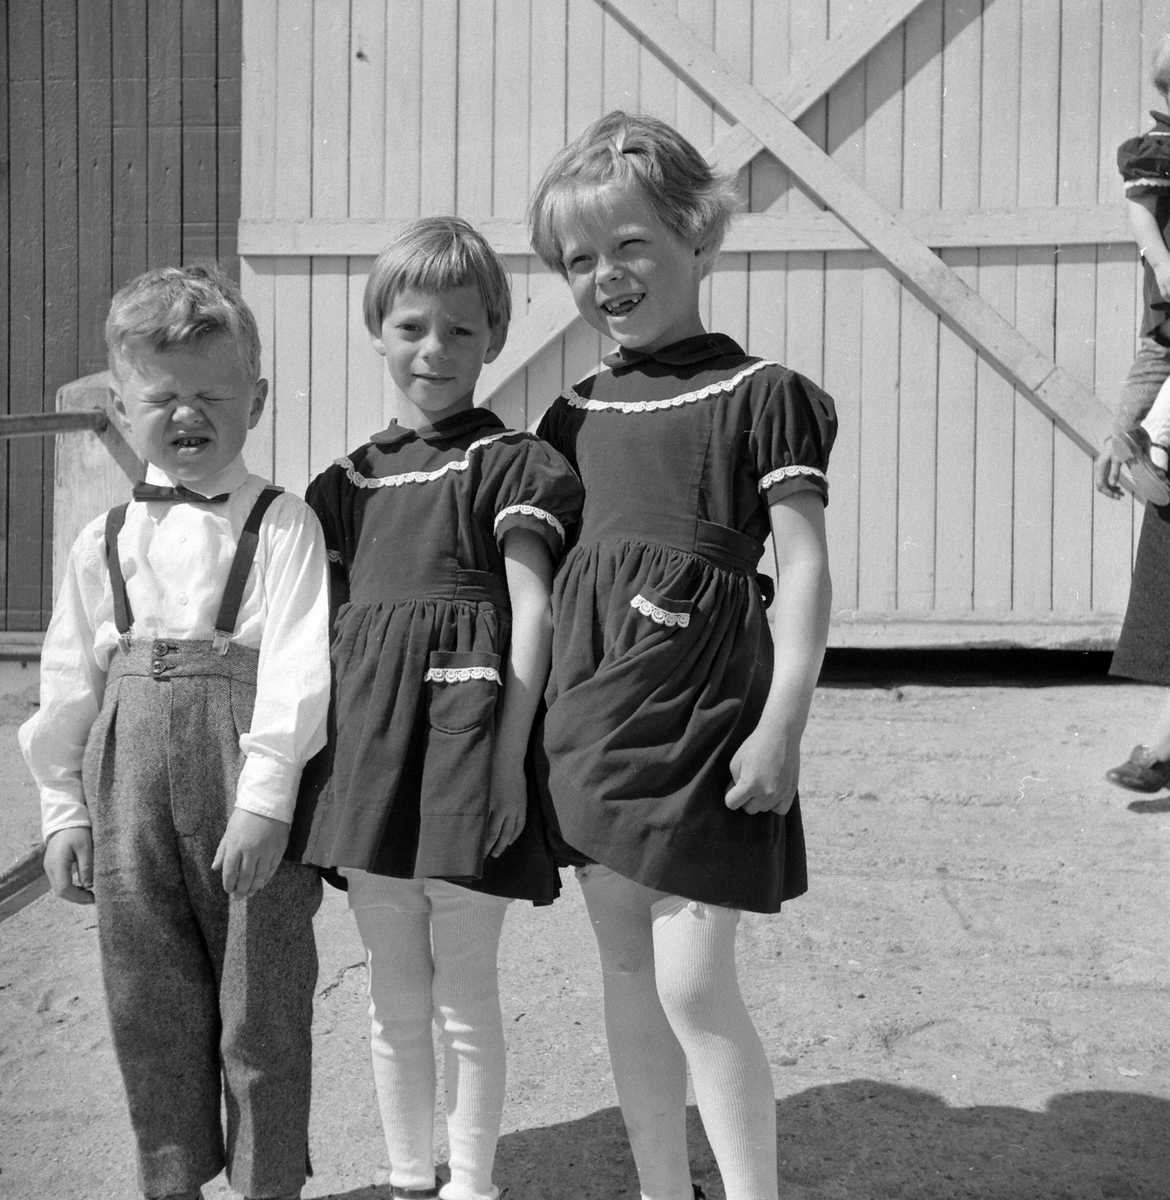 Gruppe 3 barn. Odd Ivar Søberg, Anne Grethe Strandberg og Aud Marit Søberg. Bildet er tatt i 1958. Bilde er fra kjellsrud gård. 